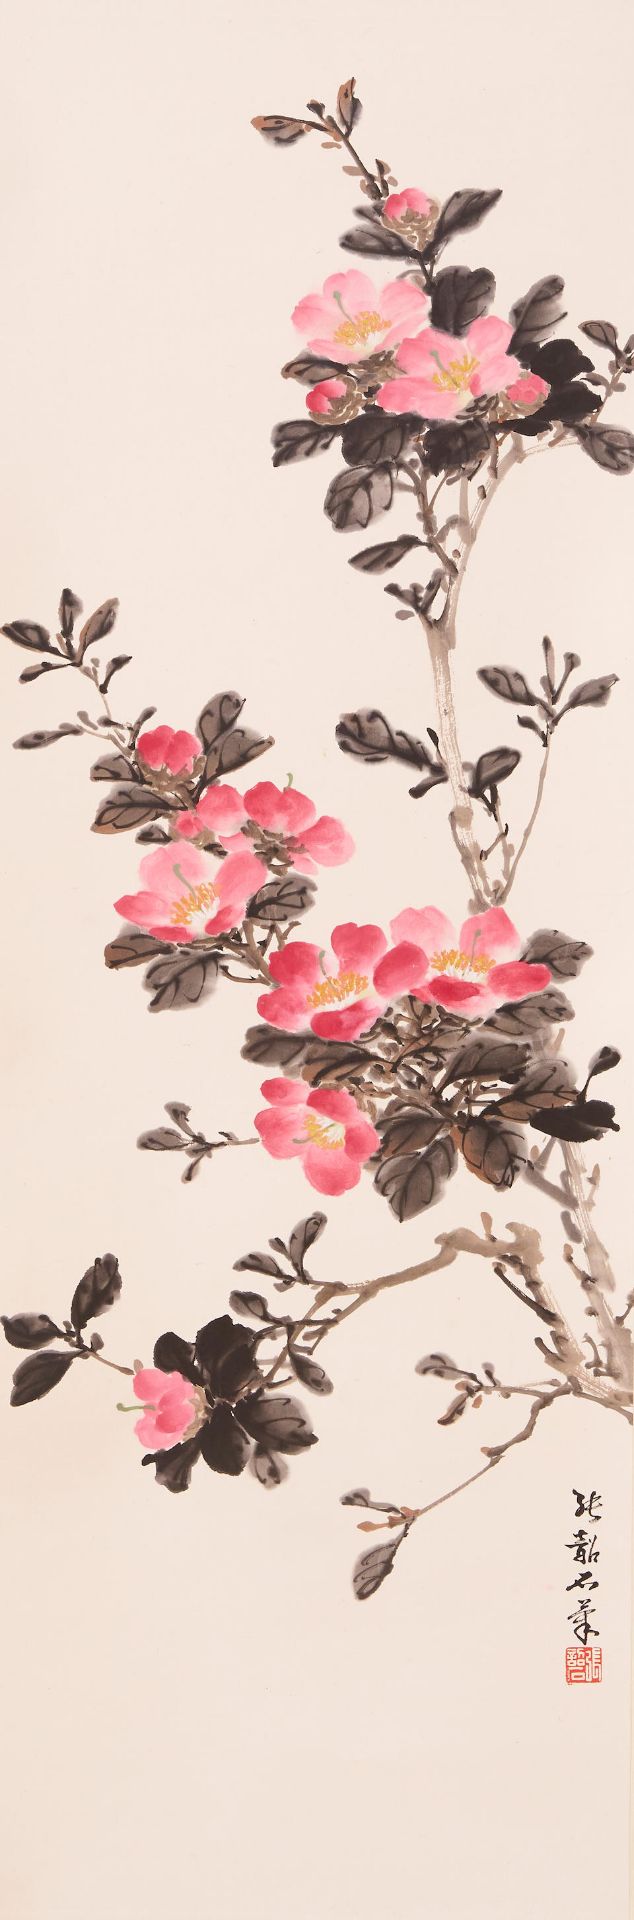 Zhang Shaoshi (1913-1991) Camellia